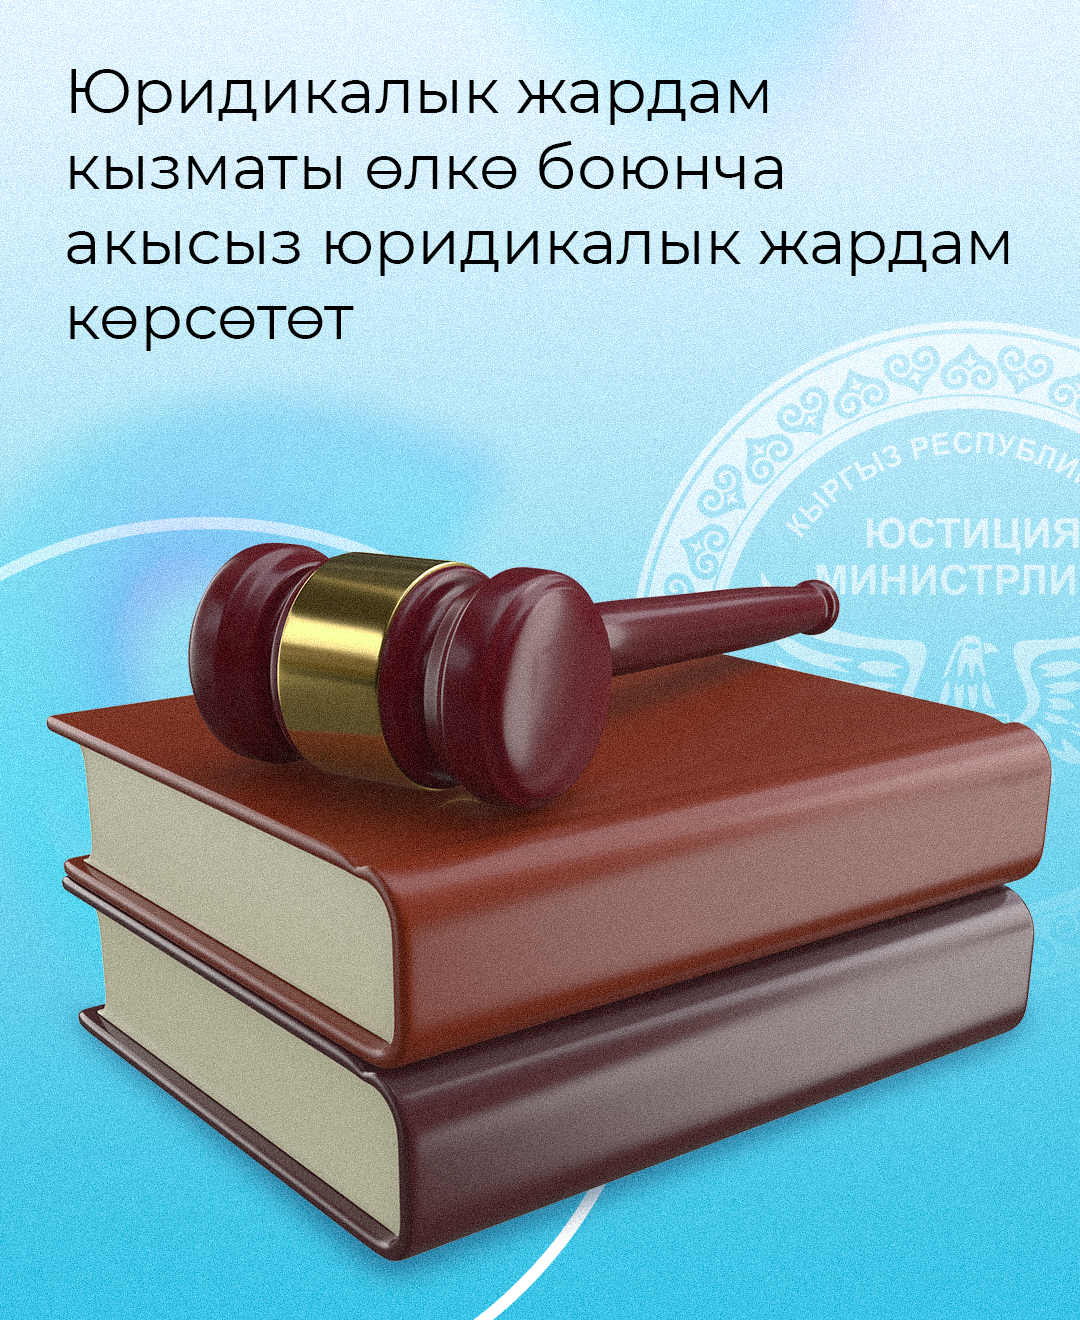 Кыргыз Республикасынын Юстиция министрлигине караштуу Юридикалык жардам кызматы (мындан ары - ЮЖК) өлкө боюнча райондук деңгээлде мамлекет кепилдеген юридикалык жардам көрсөтөт